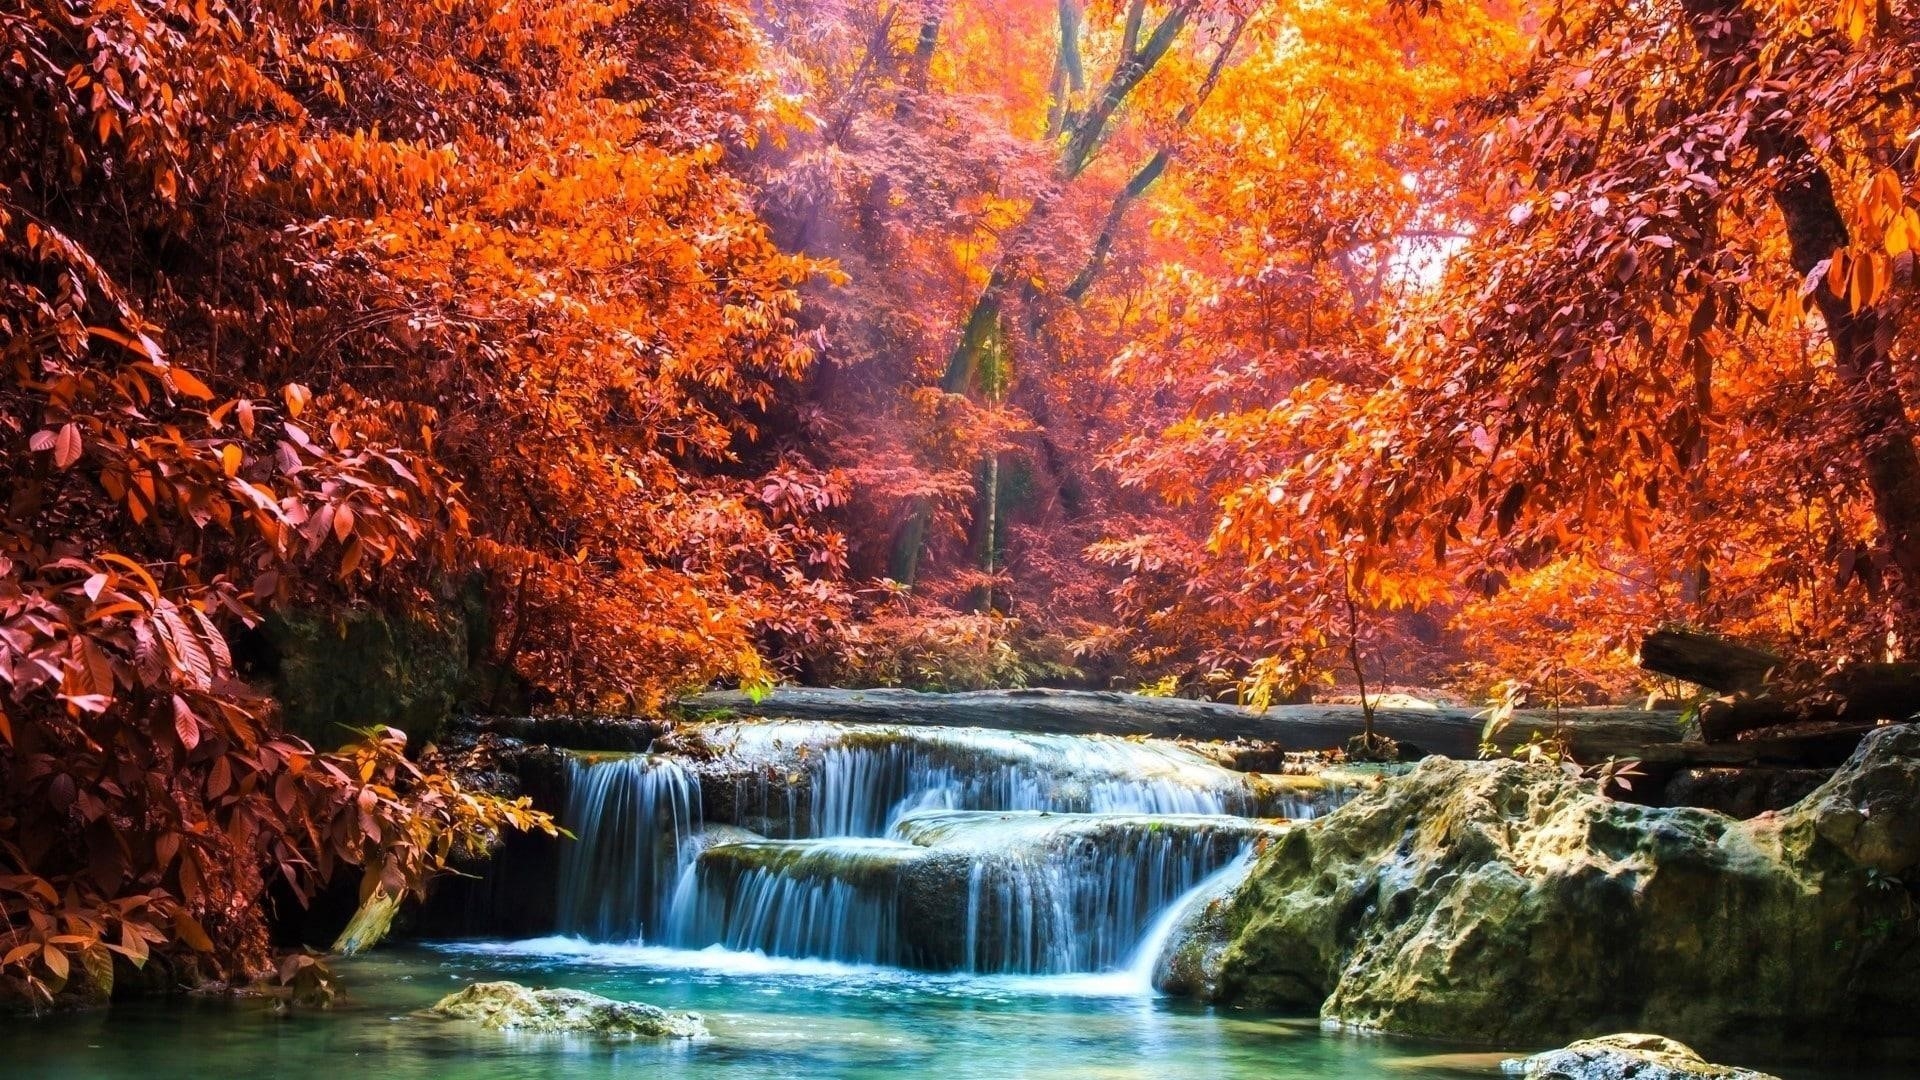 Пейзаж вид красочных осенних лиственных деревьев и водопада между скал льющегося на реку с солнечными лучами природа обои скачать